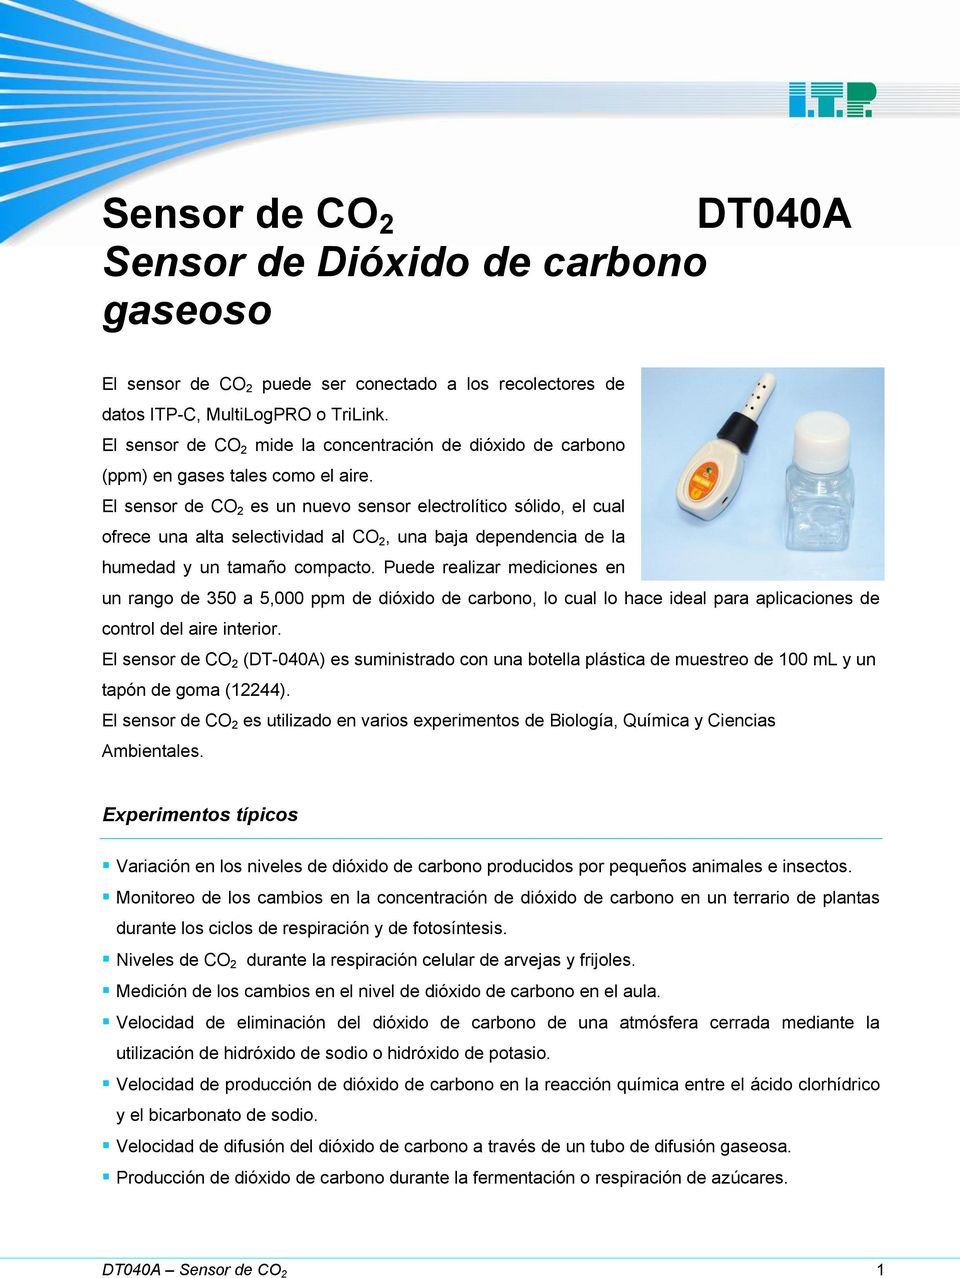 El sensor de CO 2 es un nuevo sensor electrolítico sólido, el cual ofrece una alta selectividad al CO 2, una baja dependencia de la humedad y un tamaño compacto.